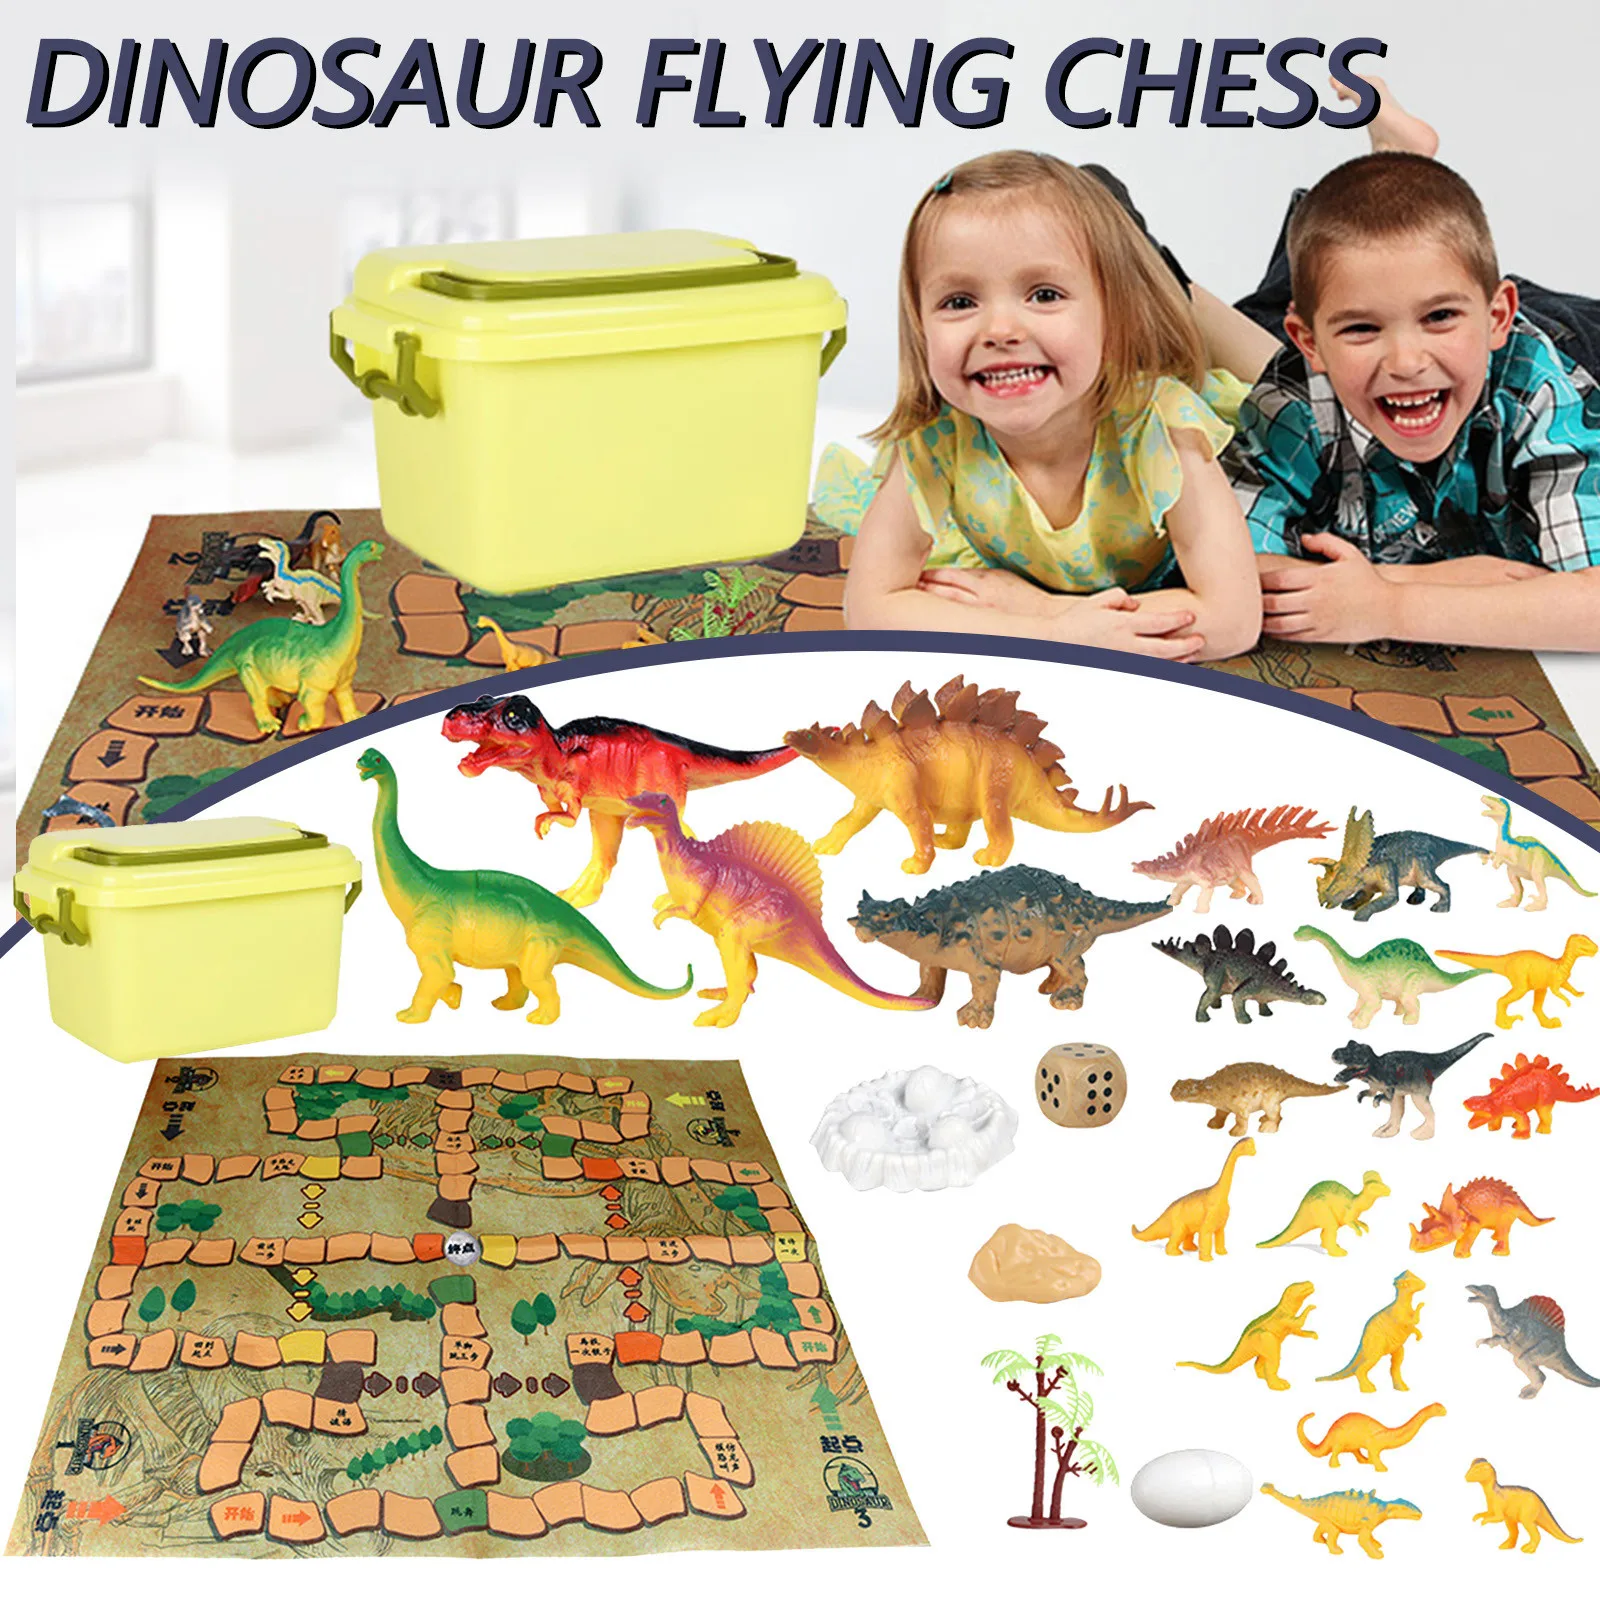 

Фигурки динозавров, игровые наборы, набор летающих шахматных фигурок динозавров, Детская Подарочная игрушка, модель животного динозавра, и...